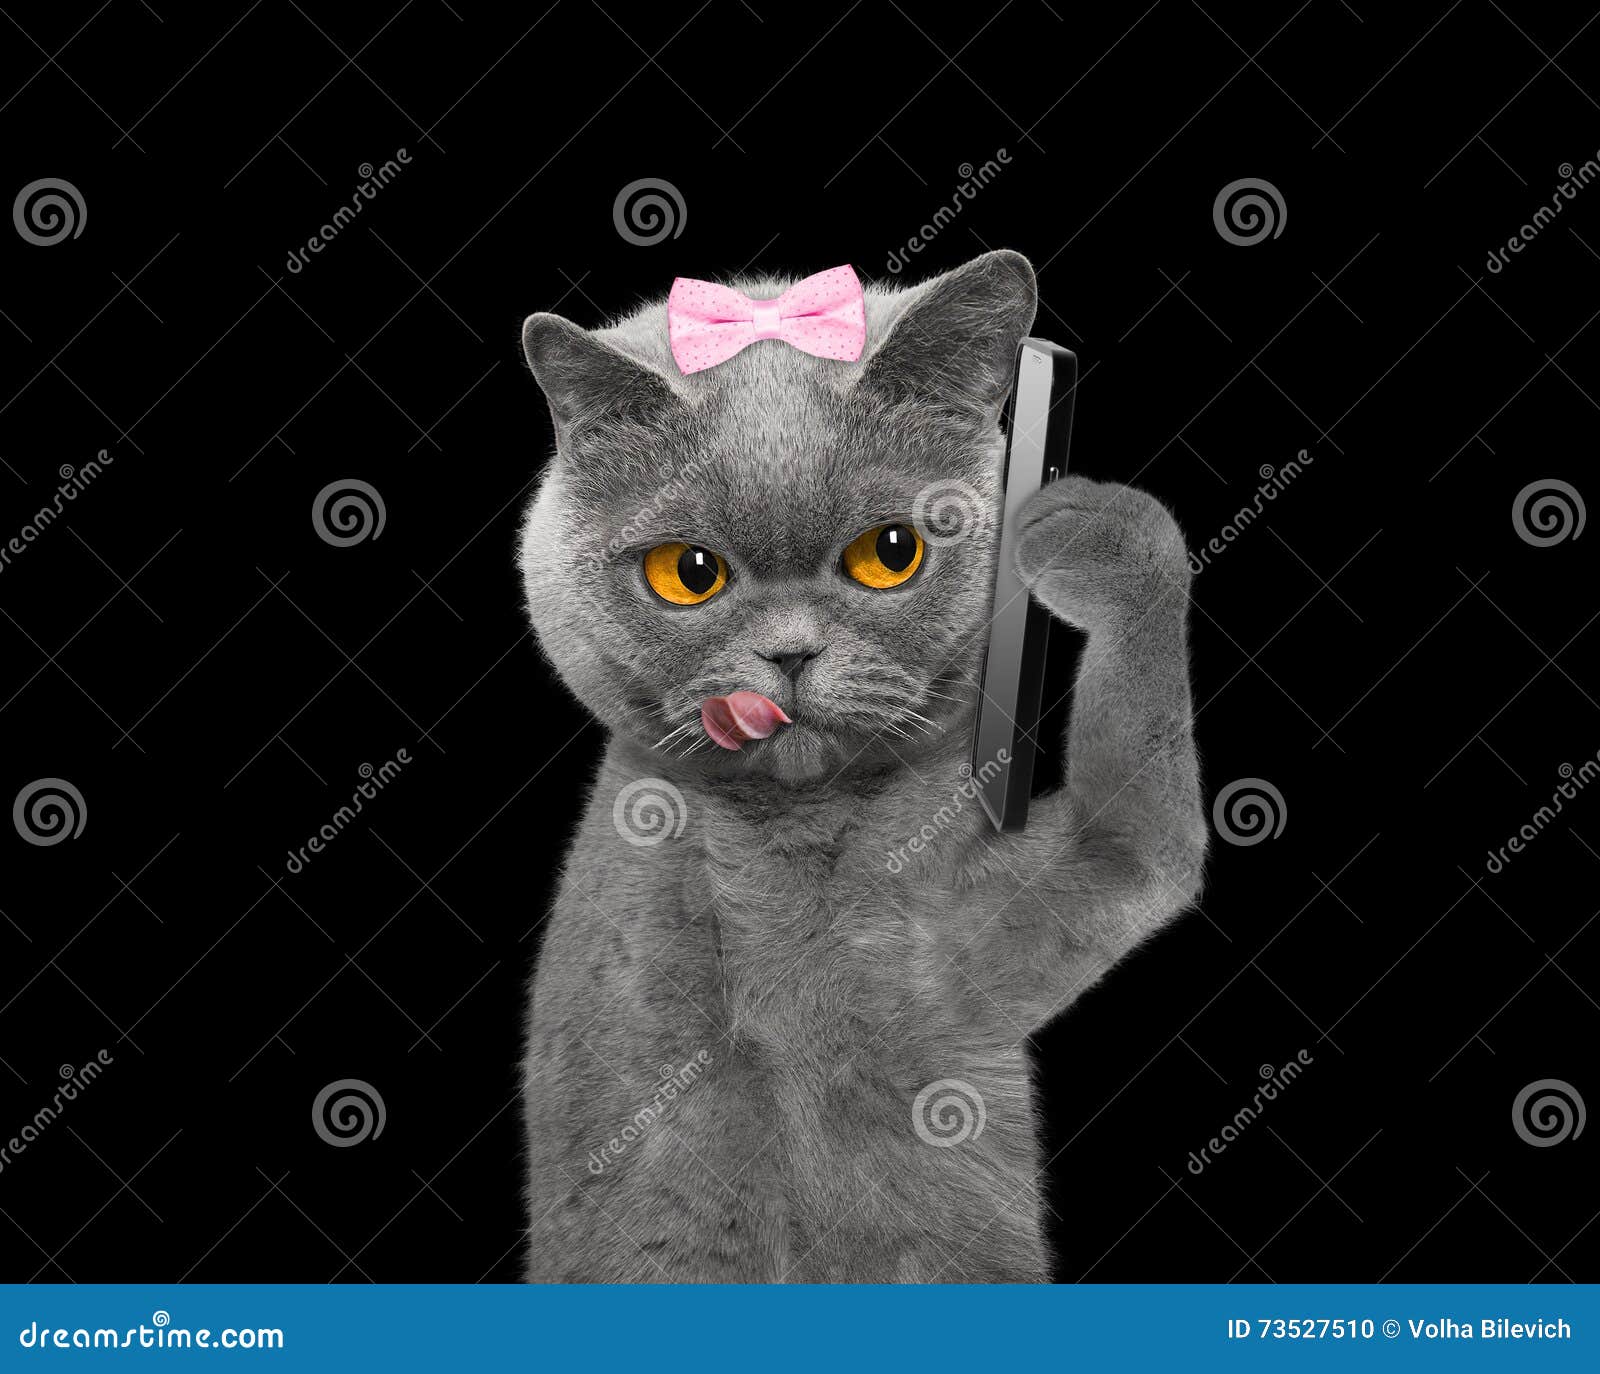 Включи скажи кота. Котик с телефоном. Котик разговаривает по телефону. Кот говорит по телефону. Кот говорит по рации.